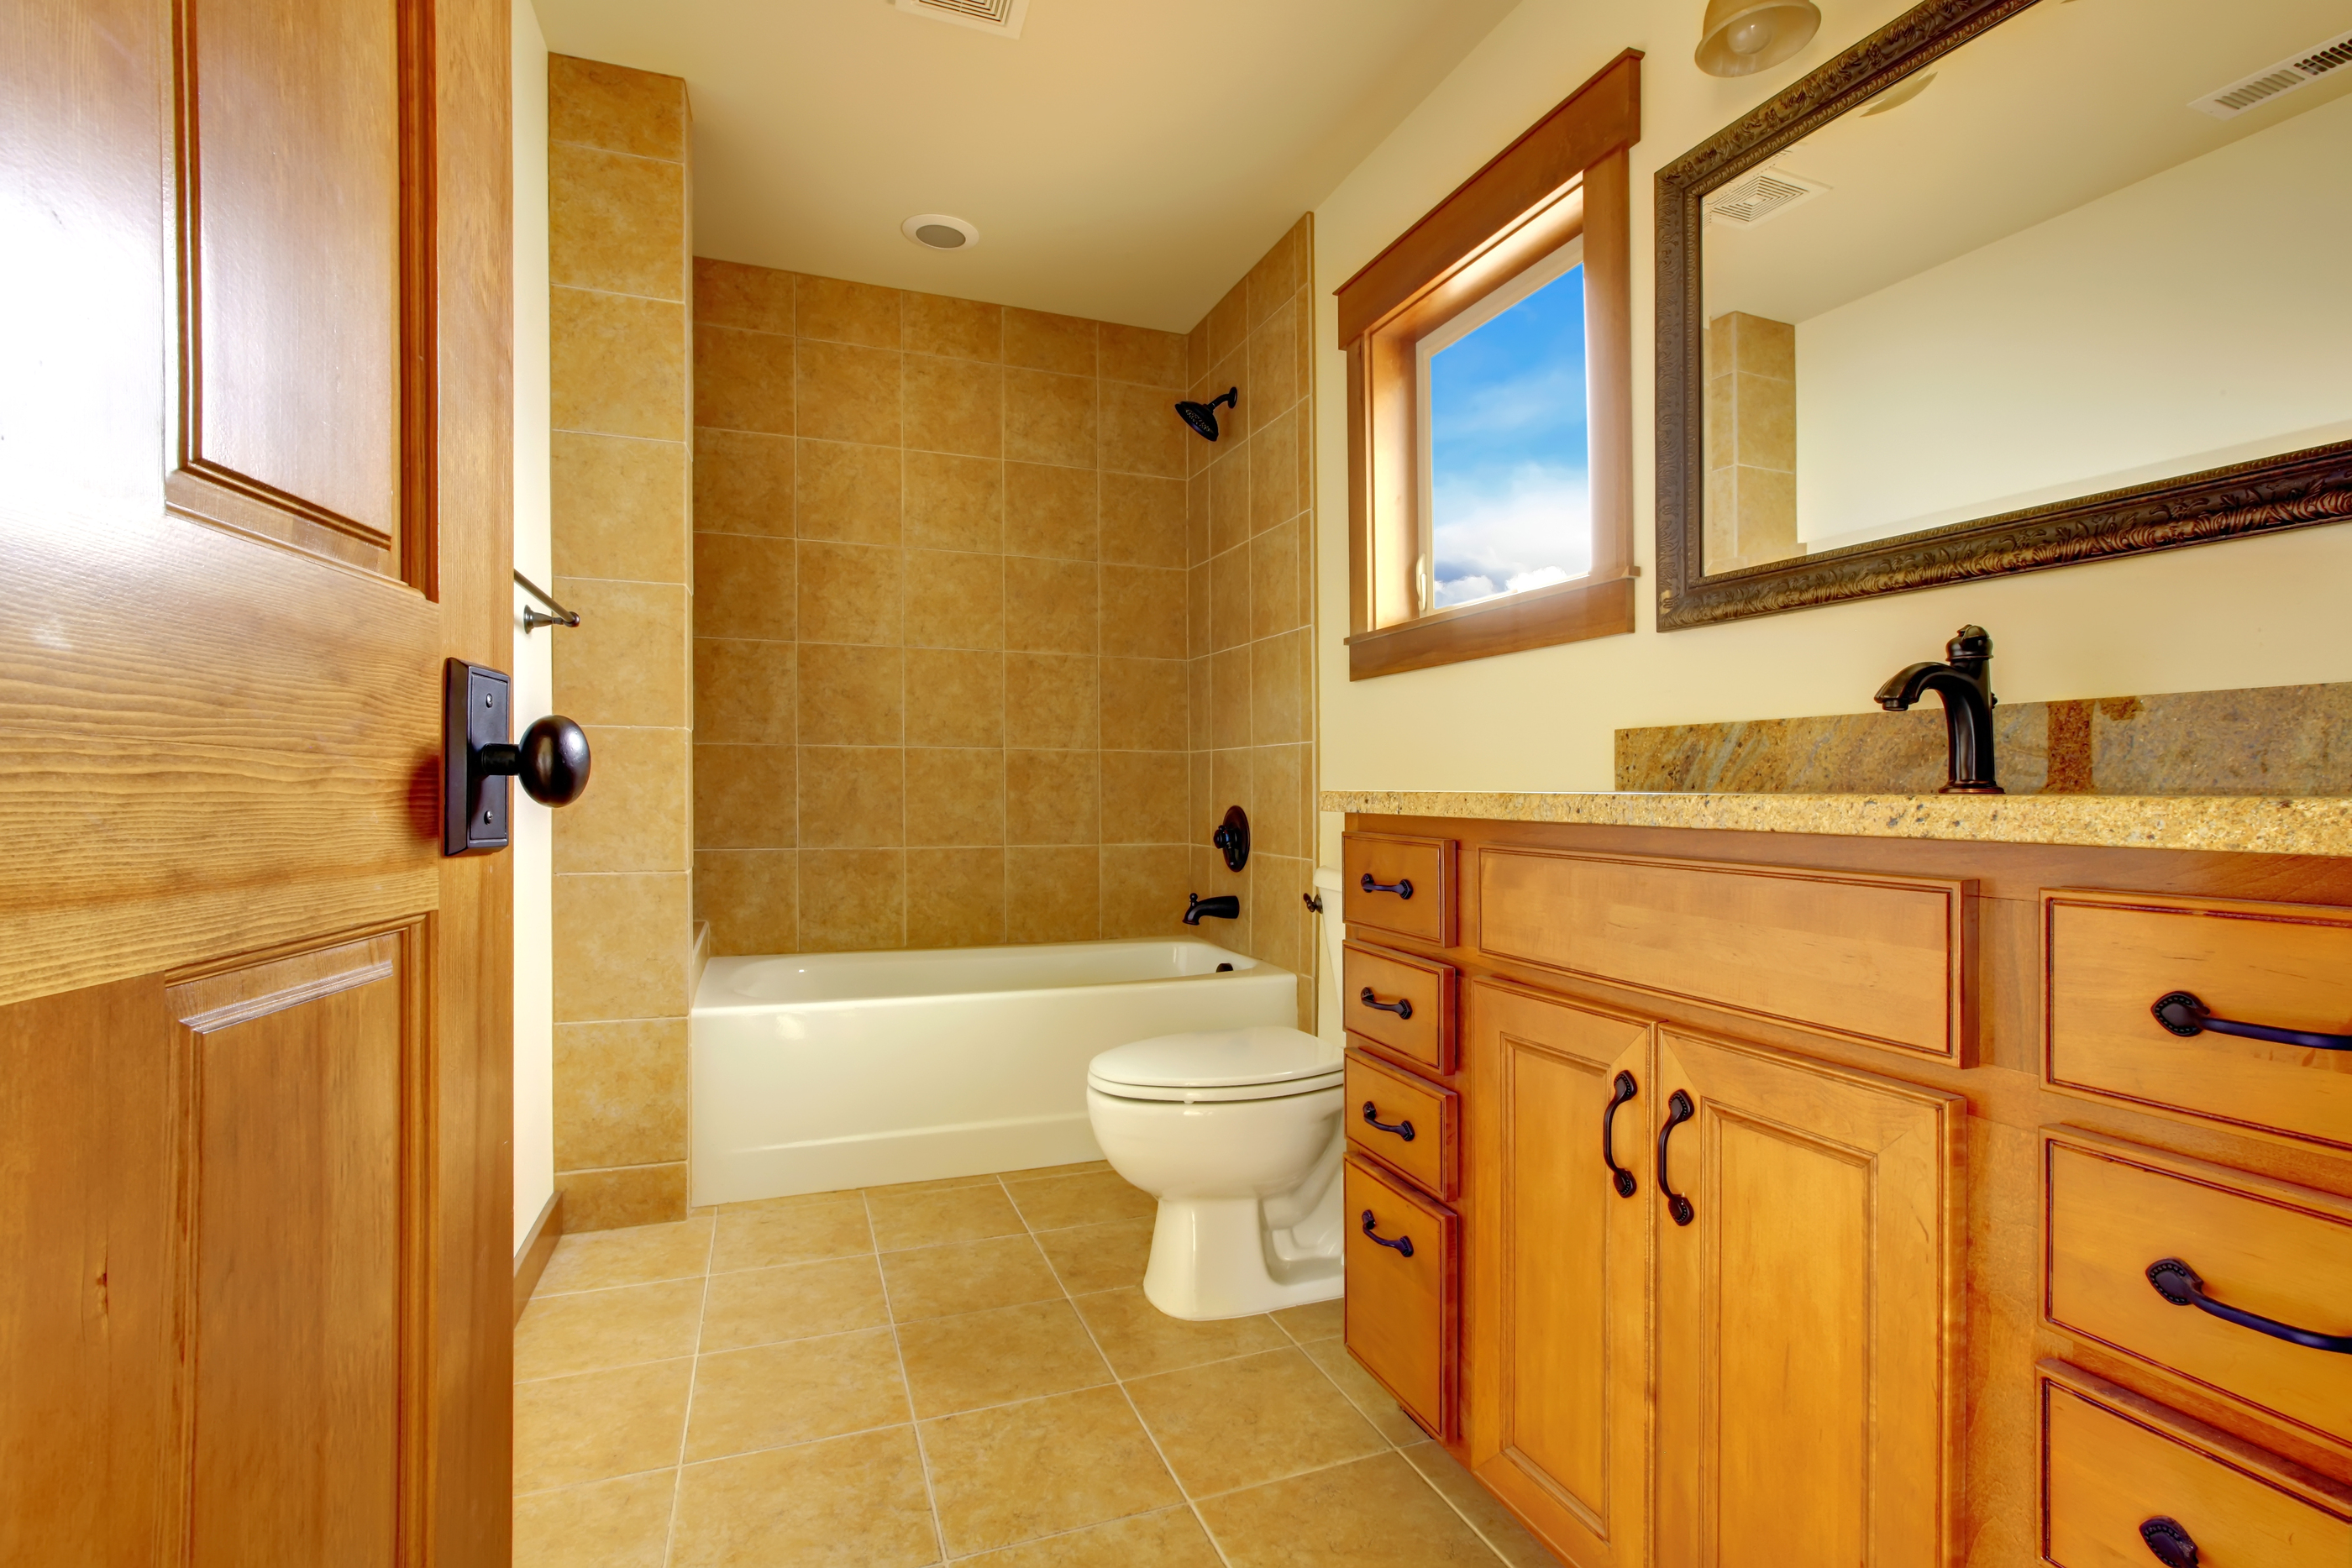 North Coaast Bathroom Vanity Tops